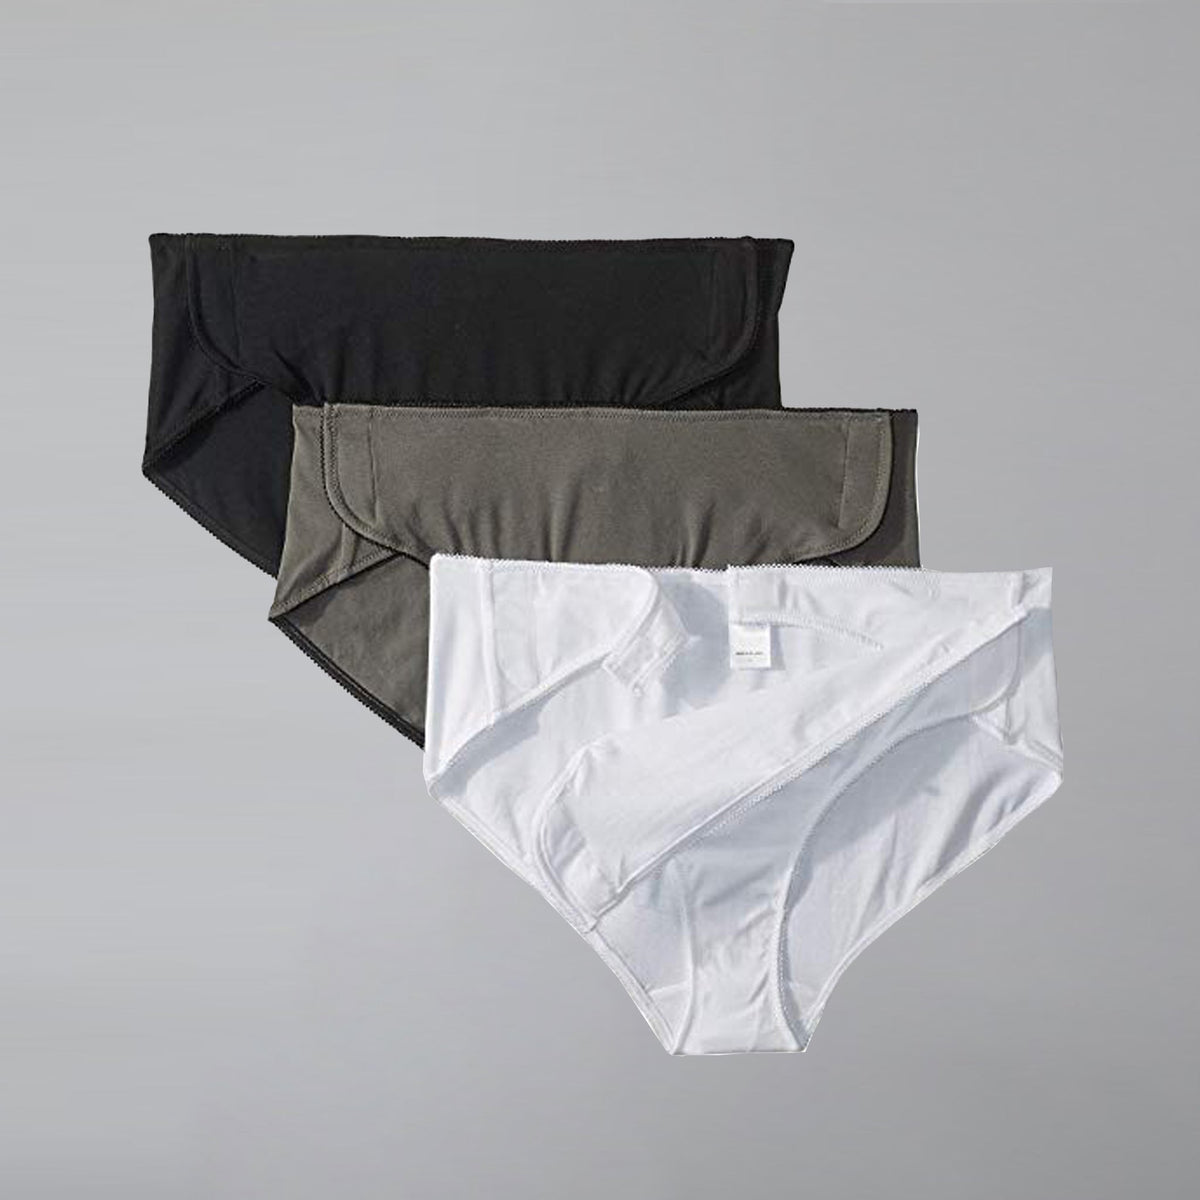 Men's White Cotton Briefs with Side-Snap Closures Underwear